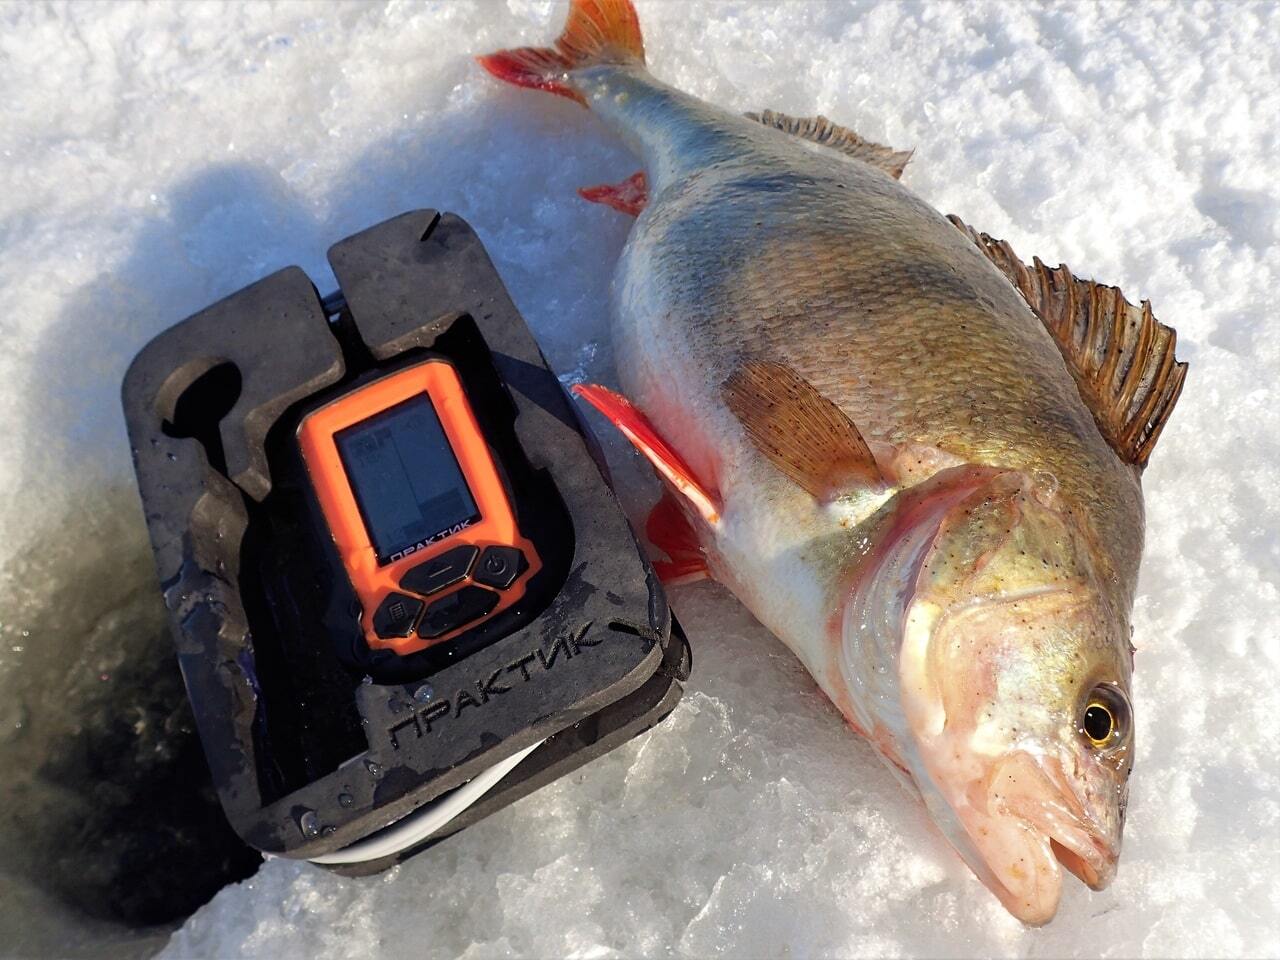 Рыбалка зимой на течении - поисковая тактика реки, снаряжение, кормление